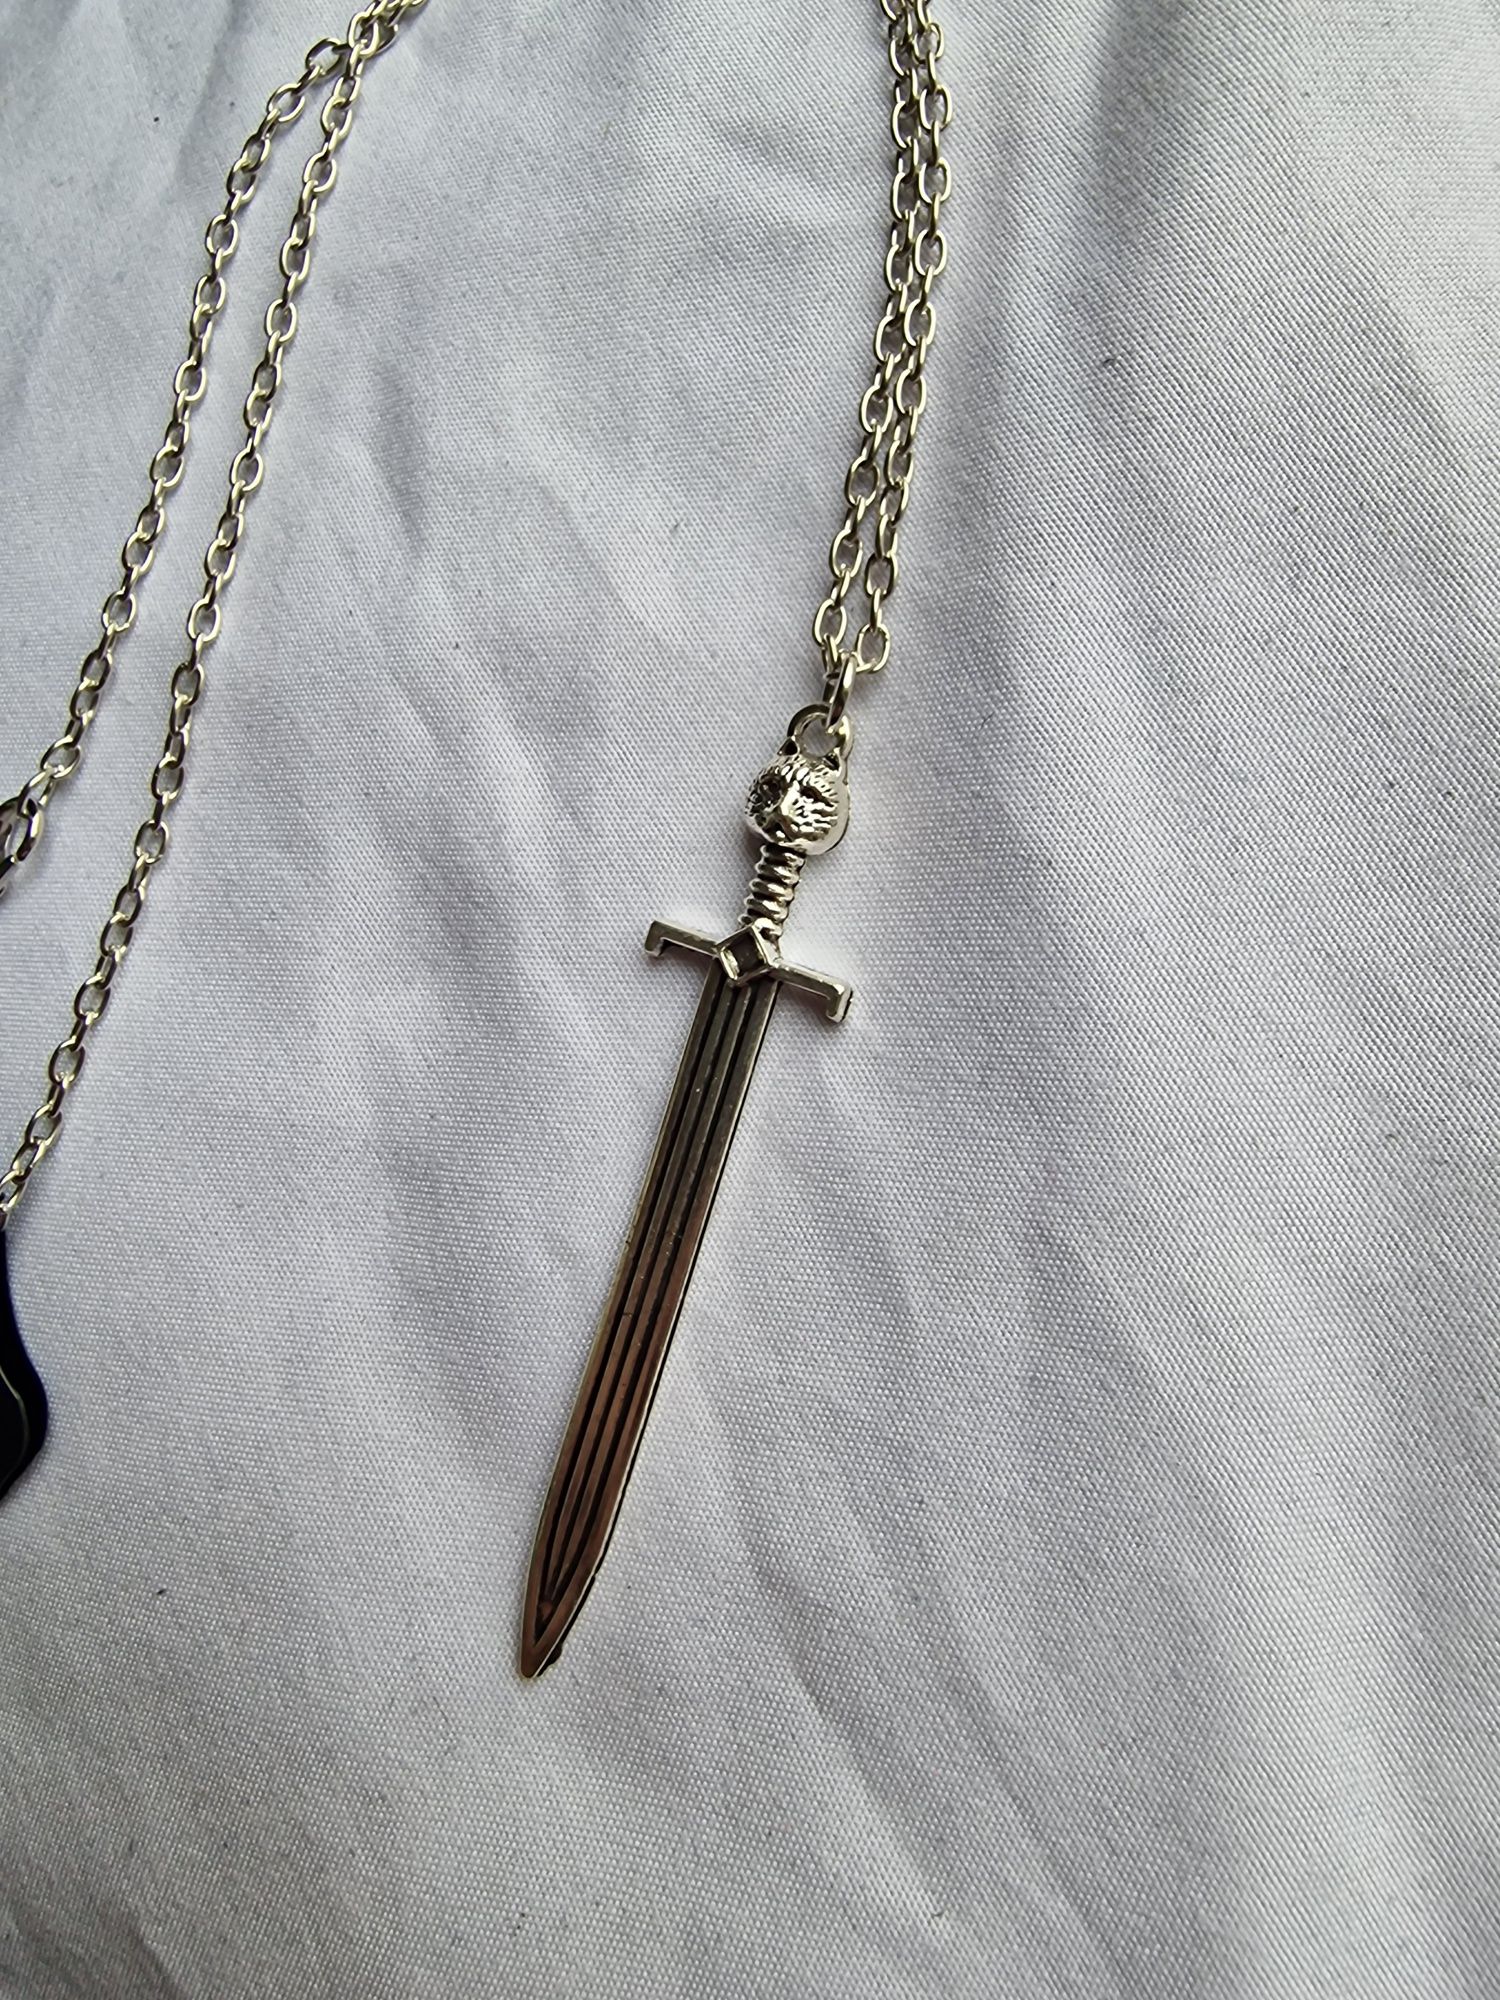 Srebrny naszyjnik z mieczem medalion sztylet gothic alternative emo